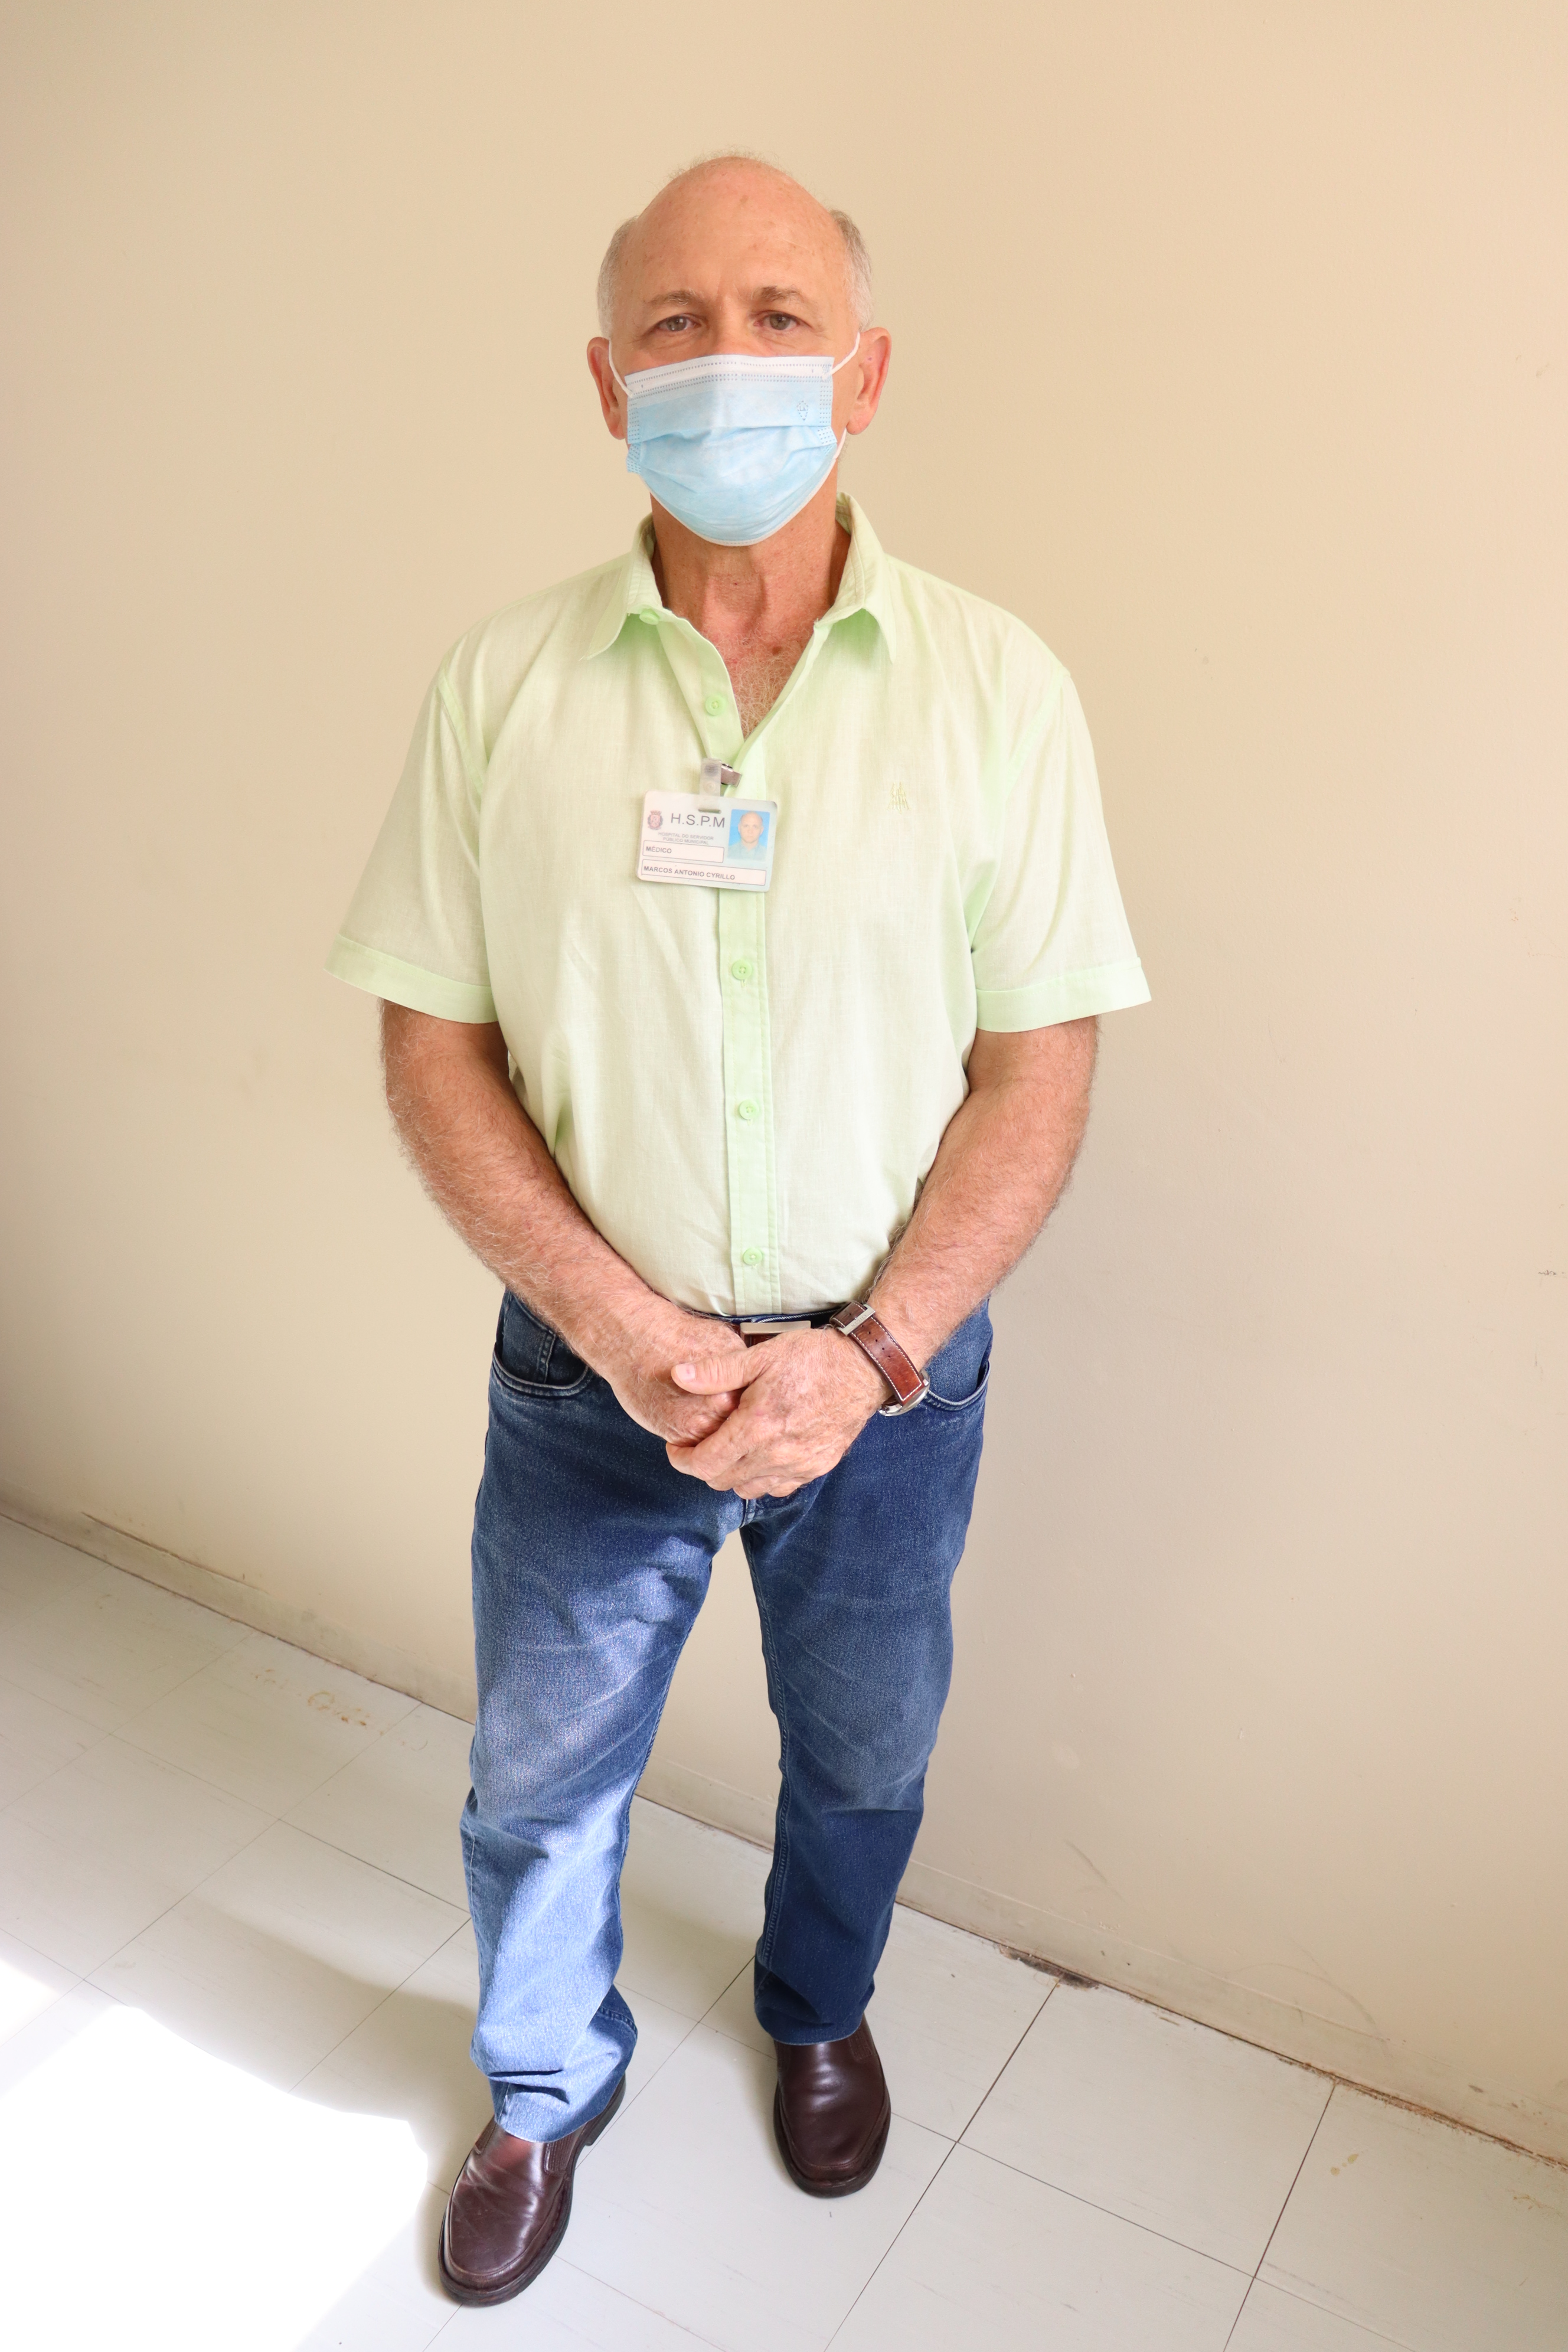 Foto do dr. Cyrillo, de sapatos escuros, calça jeans, camisa verde e máscara